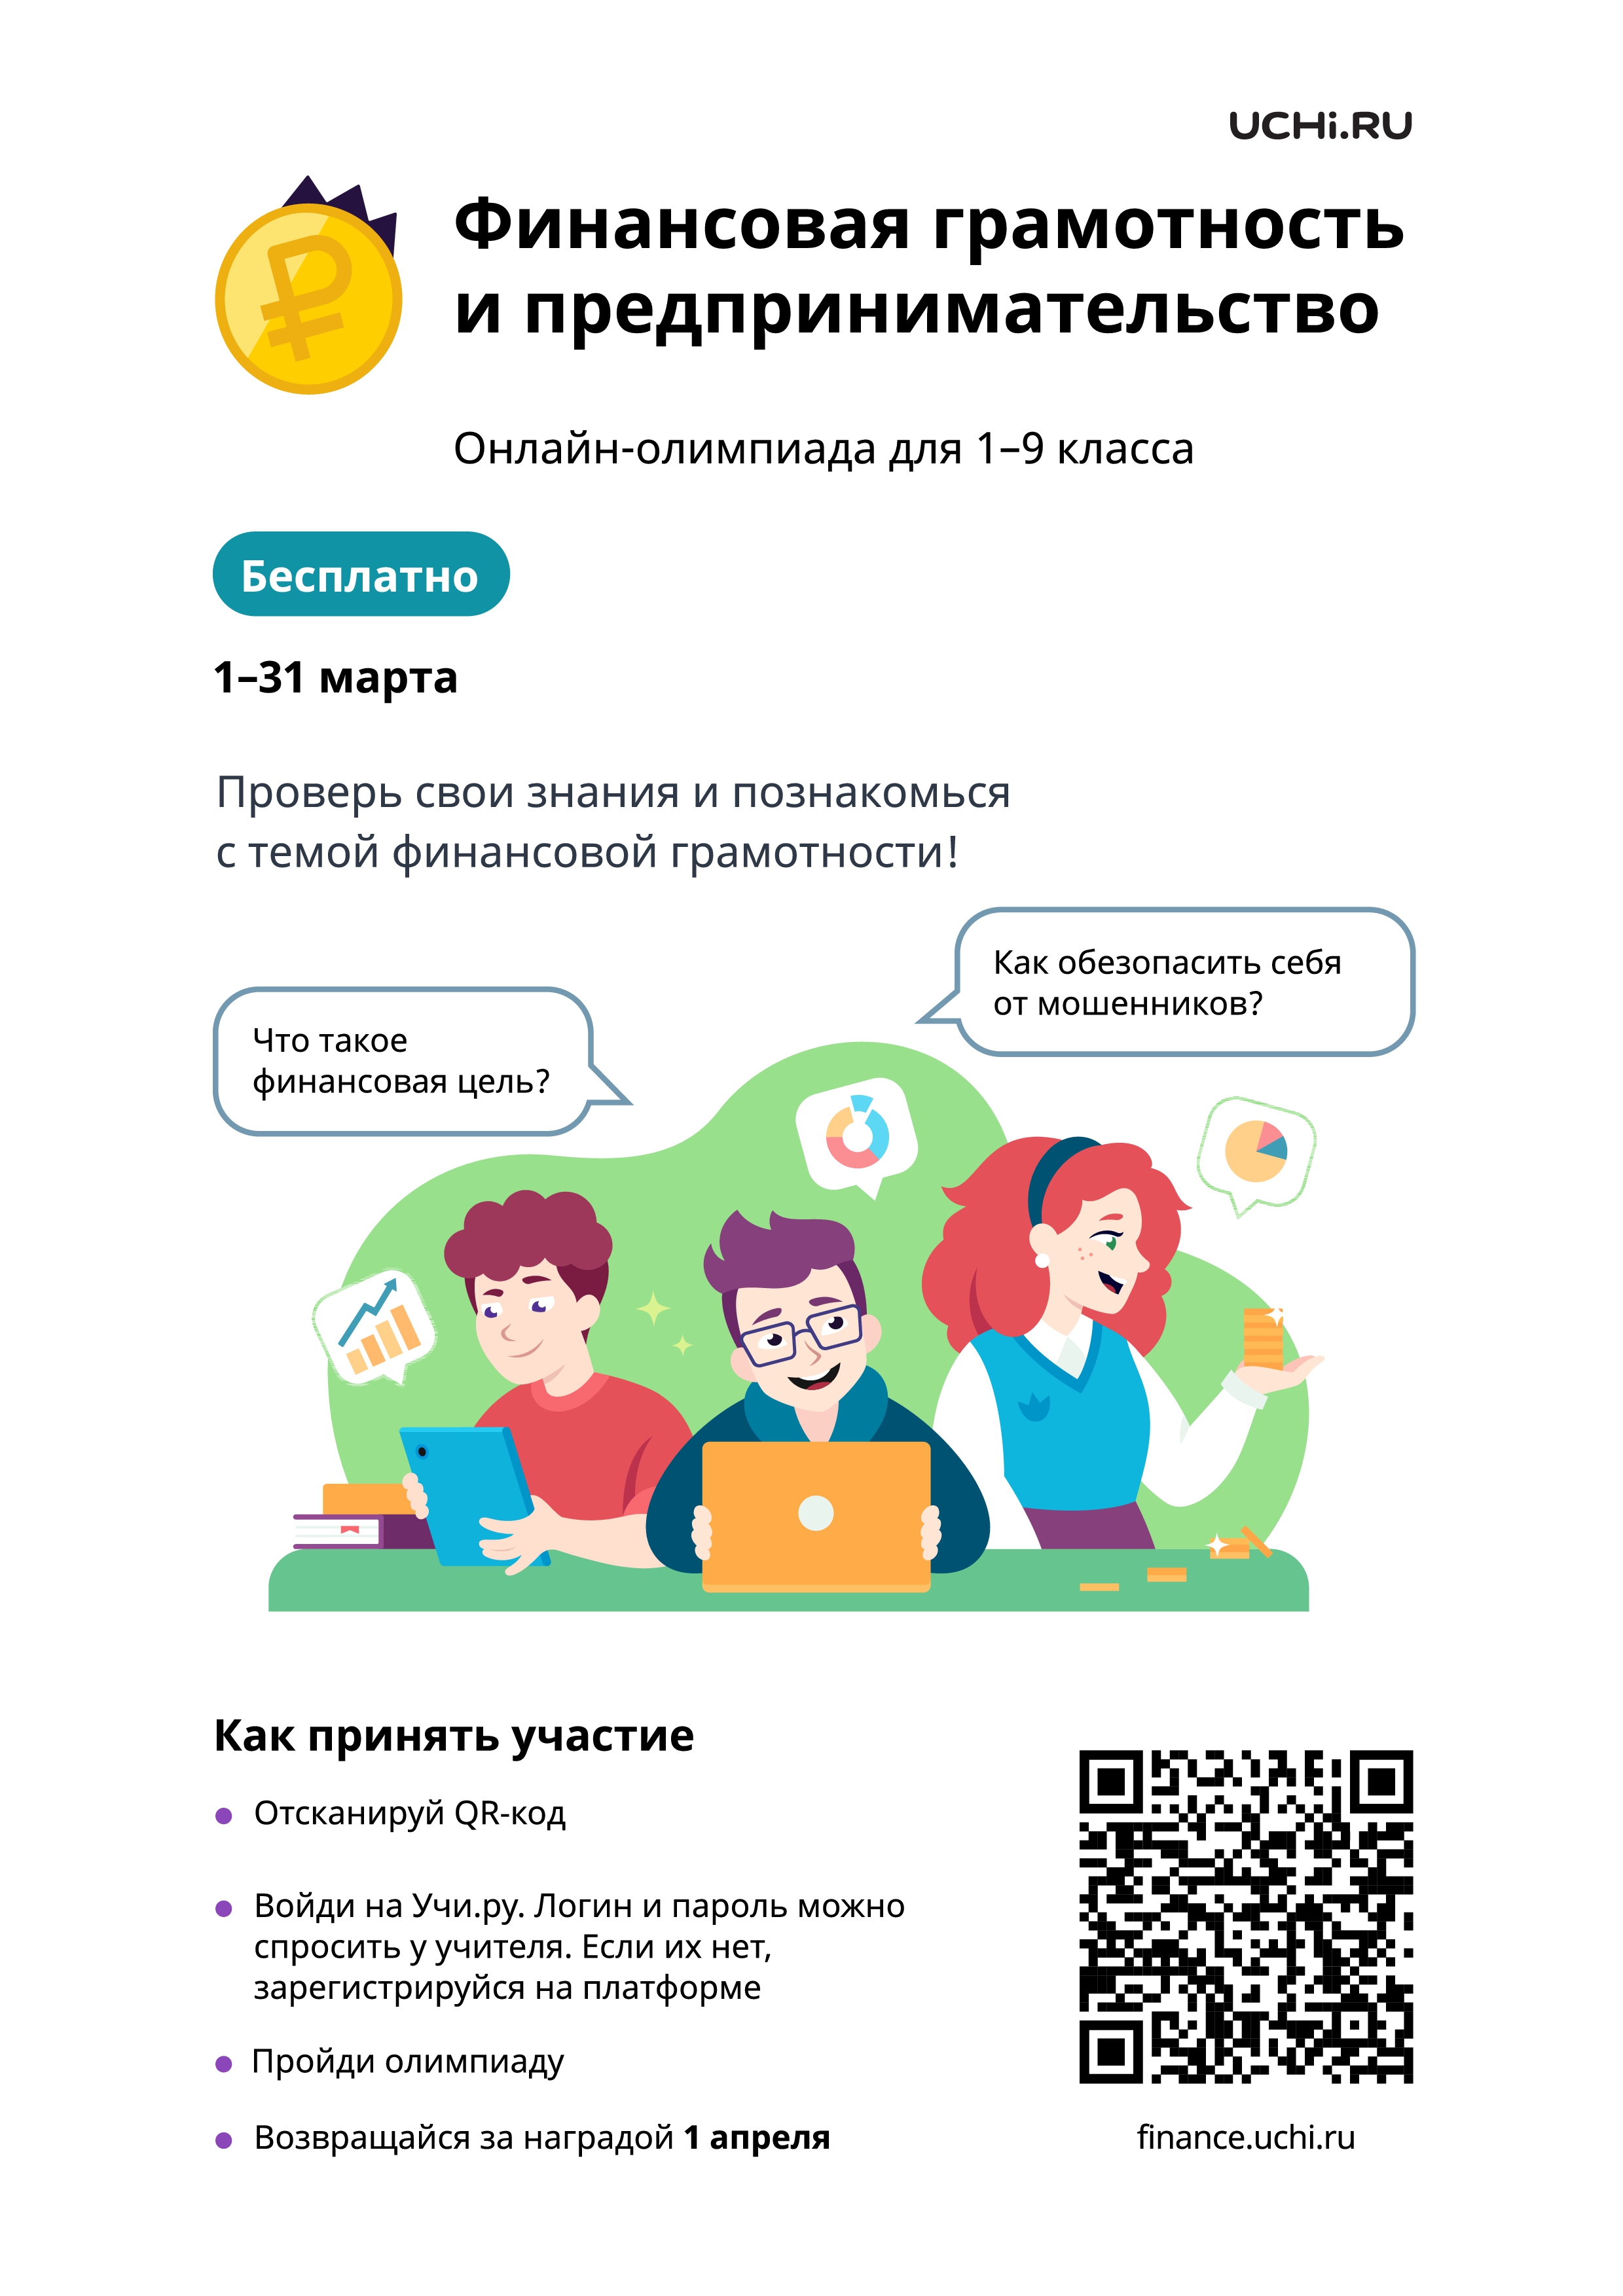 Стартовала Всероссийская онлайн-олимпиада по финансовой грамотности и предпринимательству для учеников 1-9-х классов